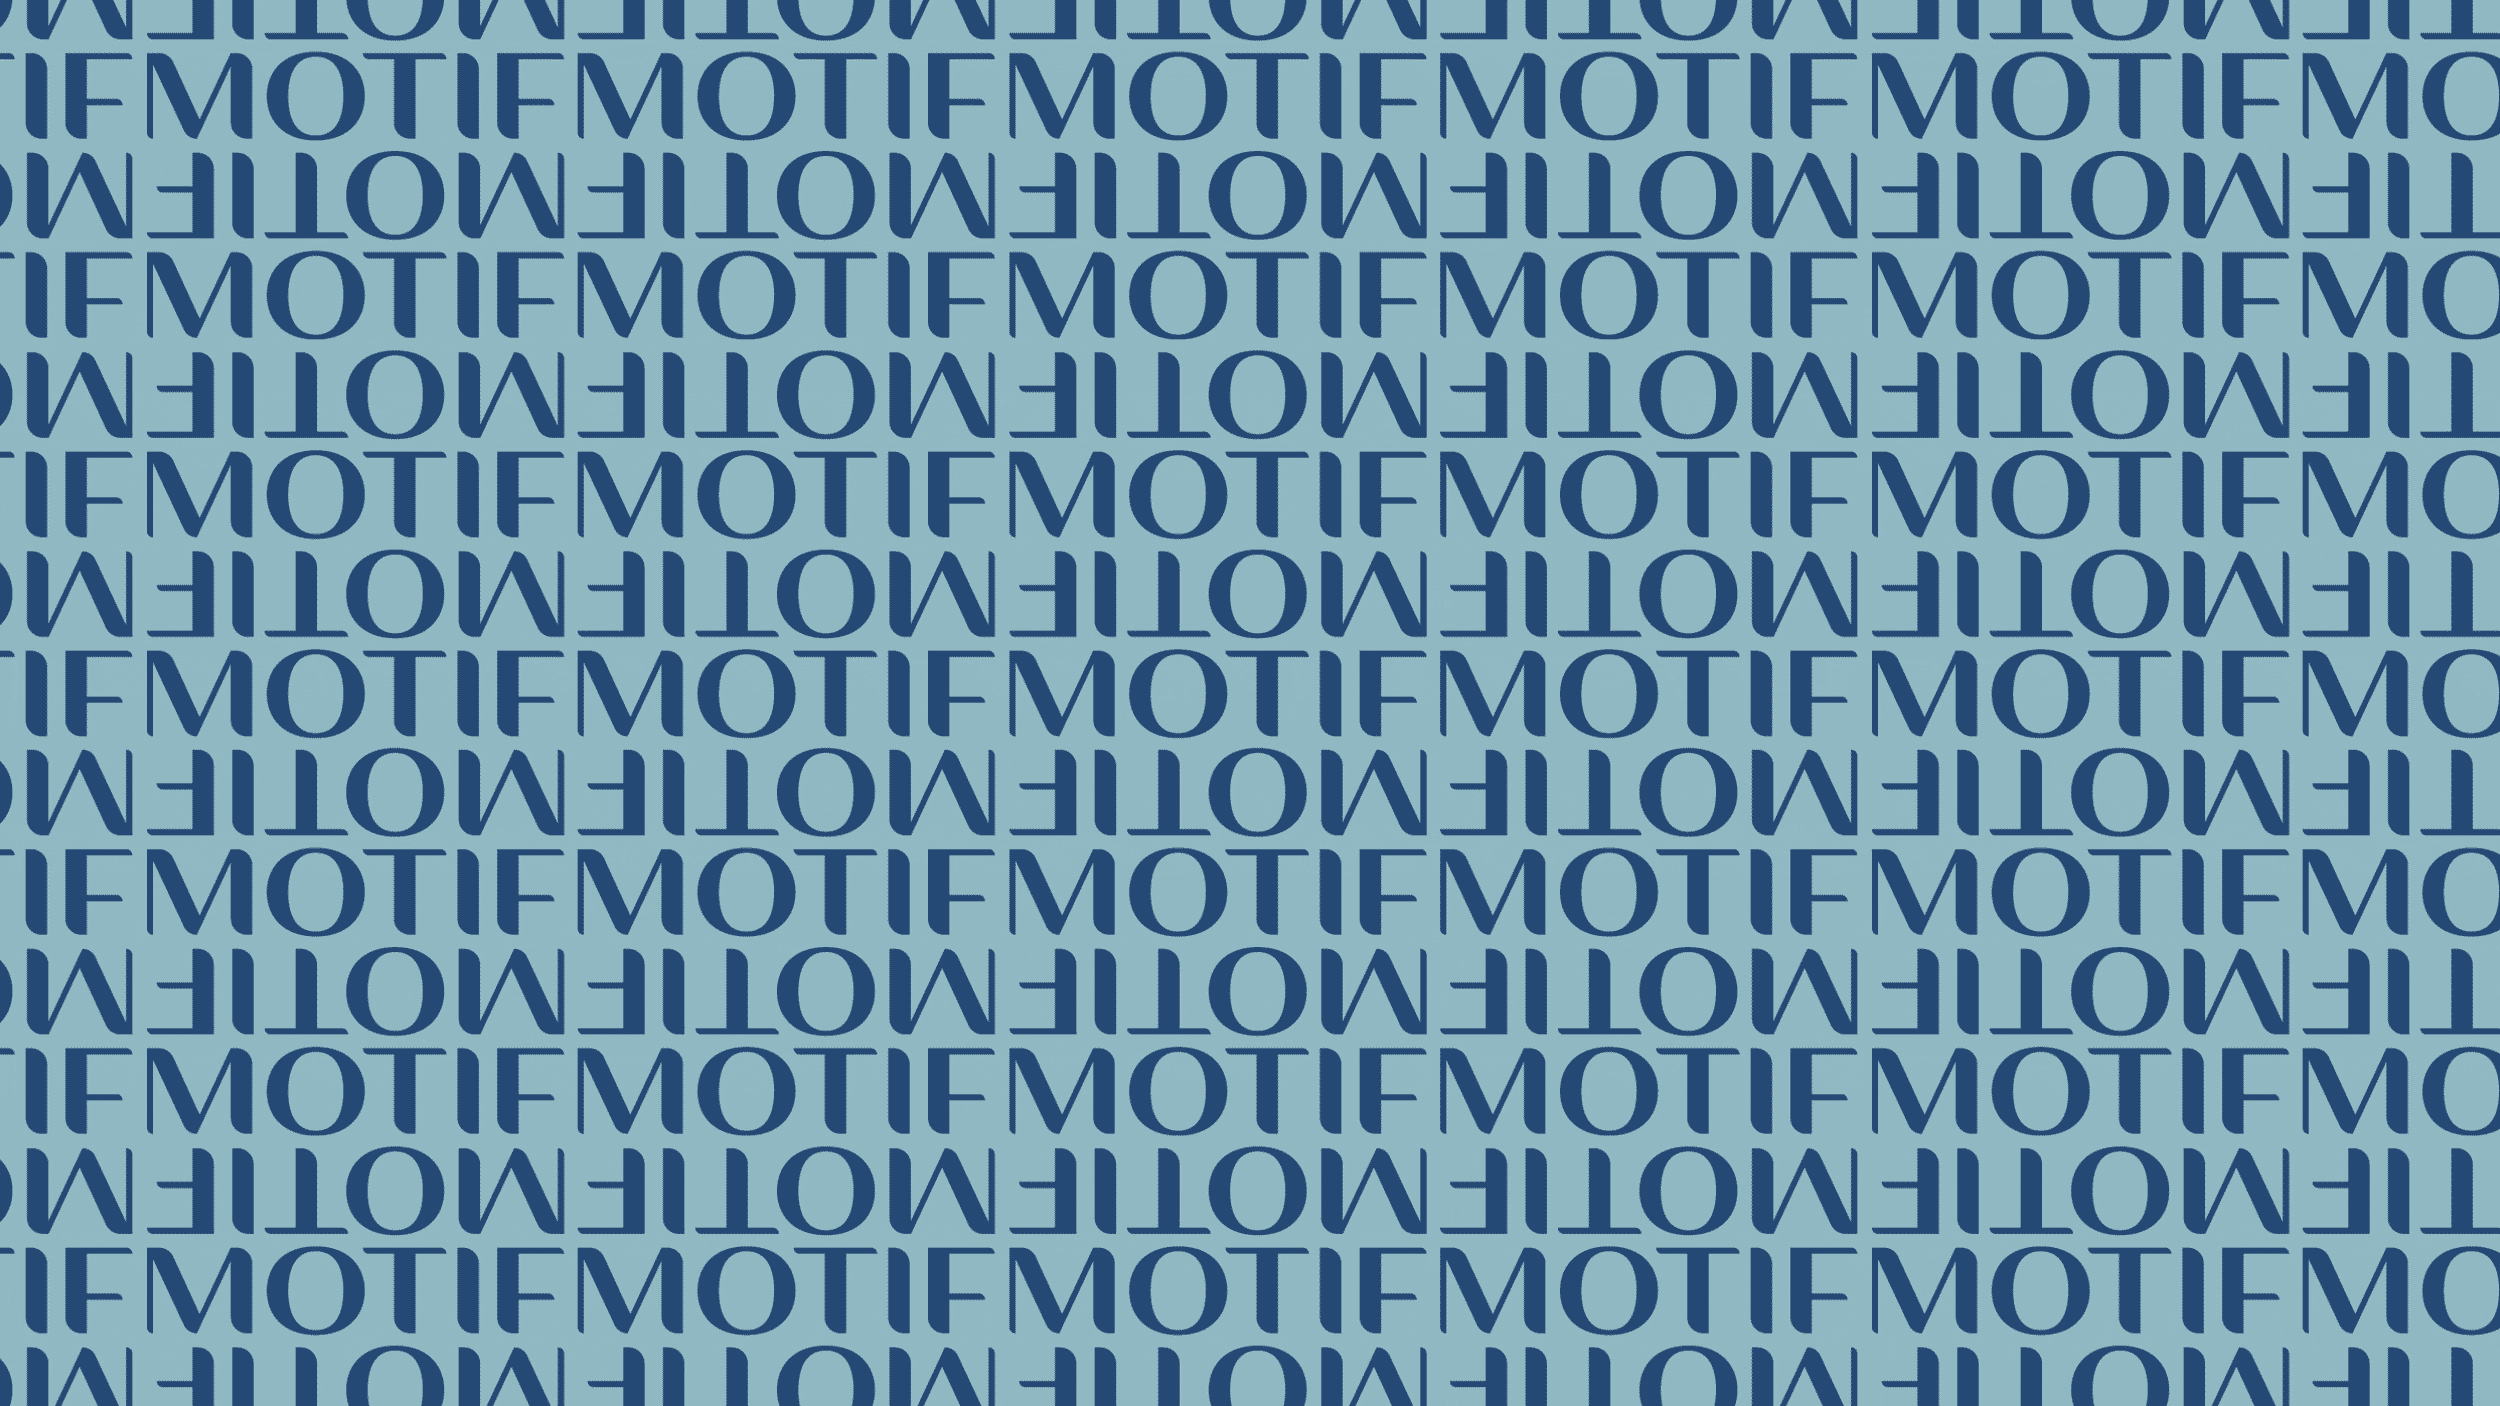 Motif pattern